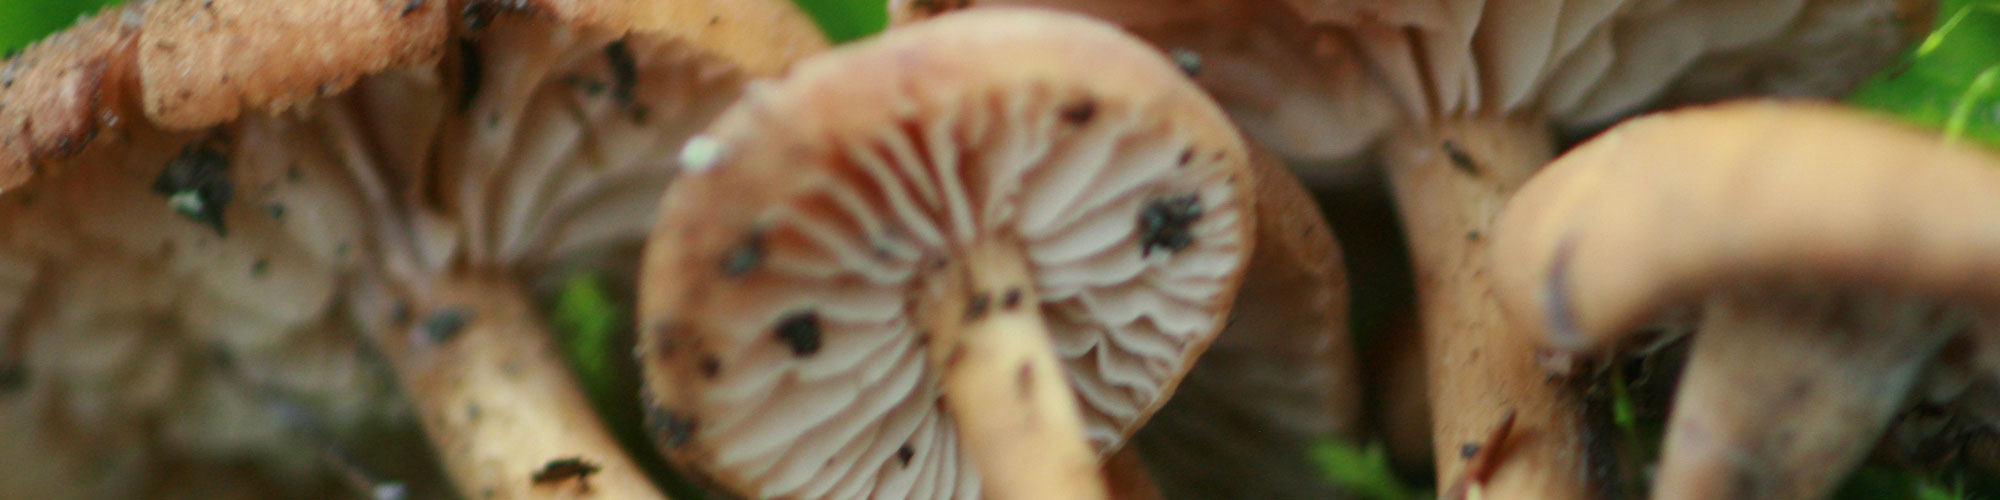 mushroom6